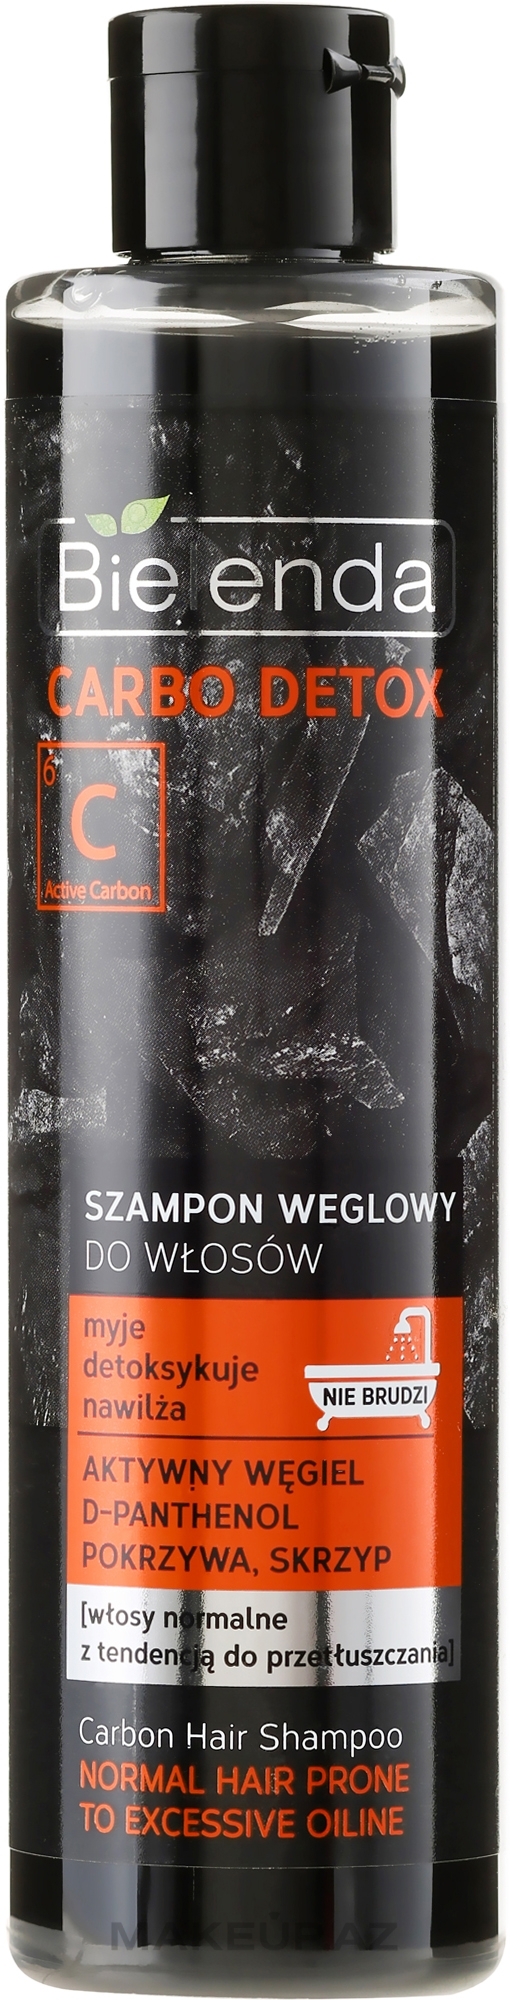 bielenda carbo detox szampon węglowy do włosów 245g